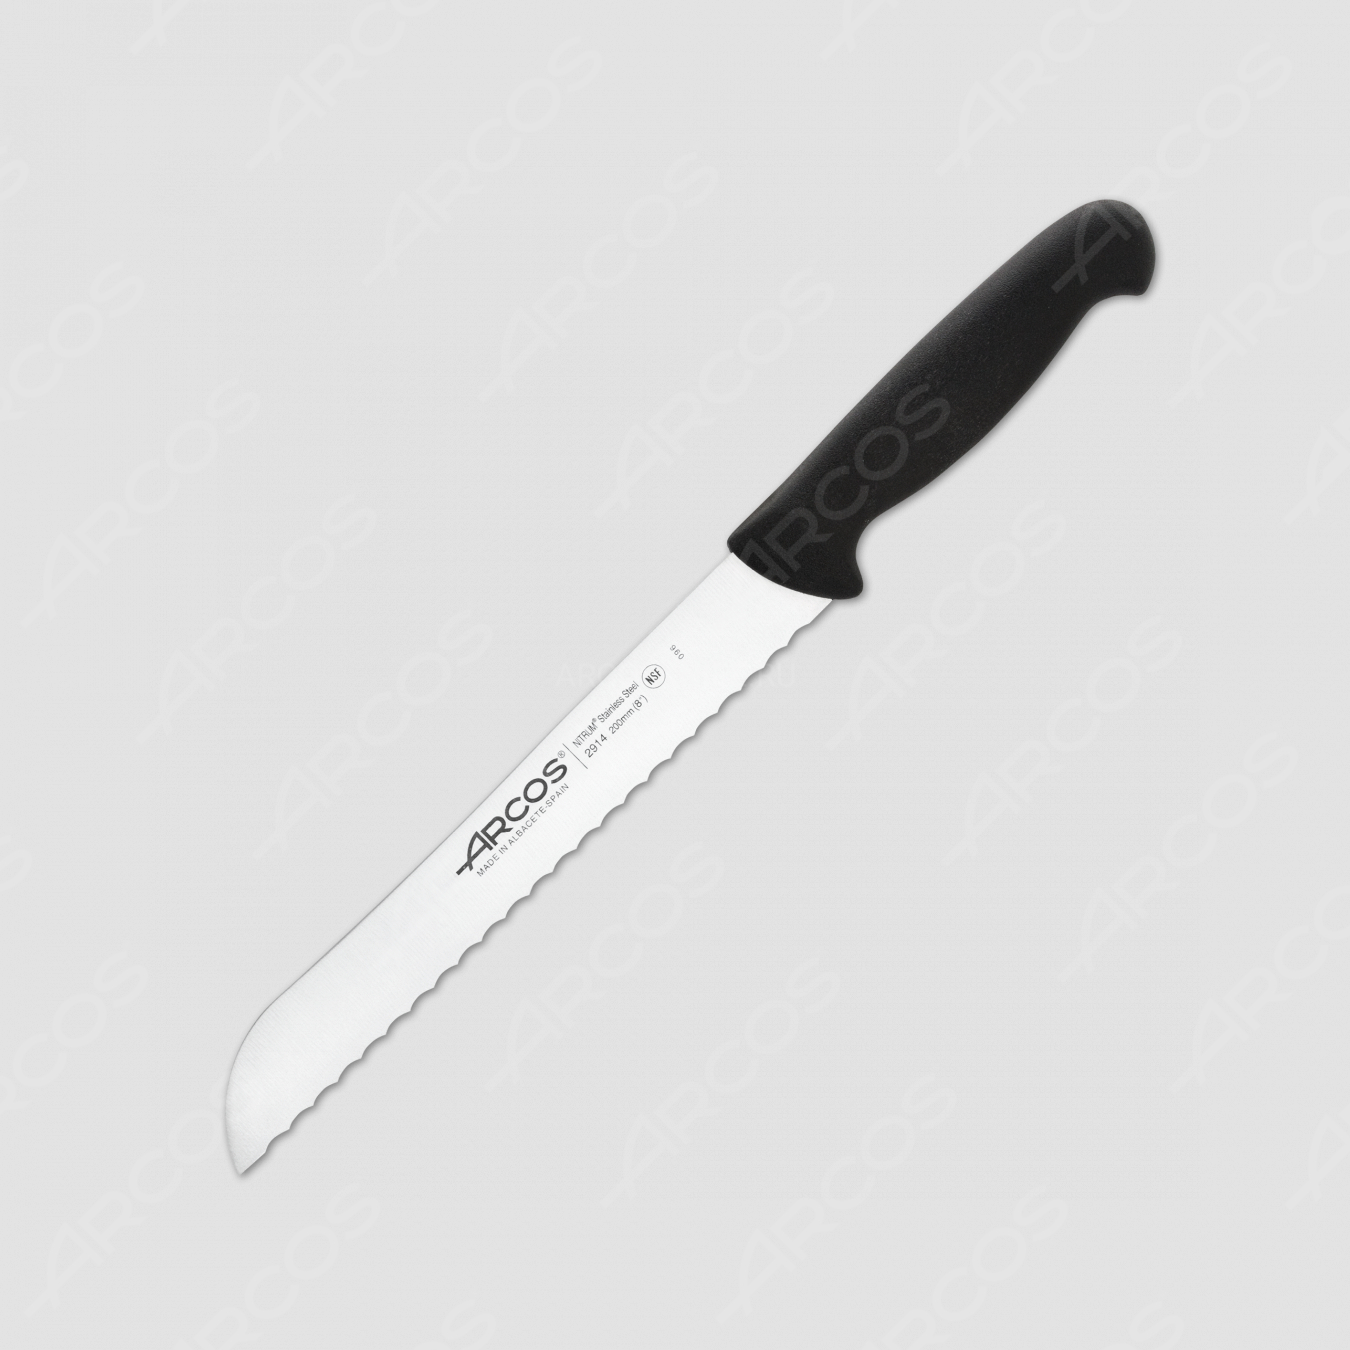 Нож кухонный хлебный 20 см, рукоять черная, серия 2900, ARCOS, Испания